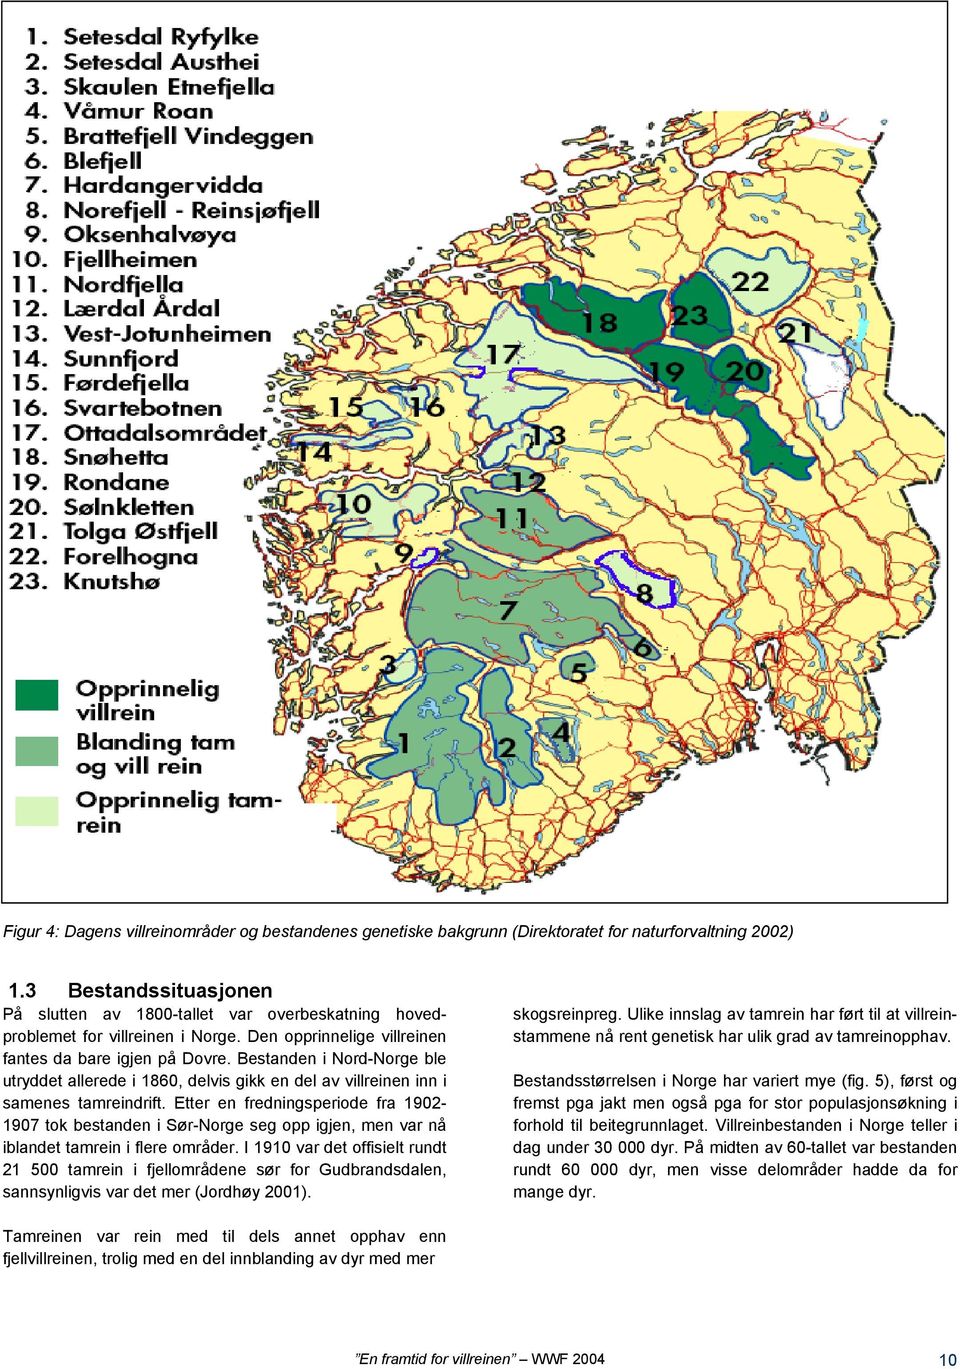 Bestanden i Nord-Norge ble utryddet allerede i 1860, delvis gikk en del av villreinen inn i samenes tamreindrift.